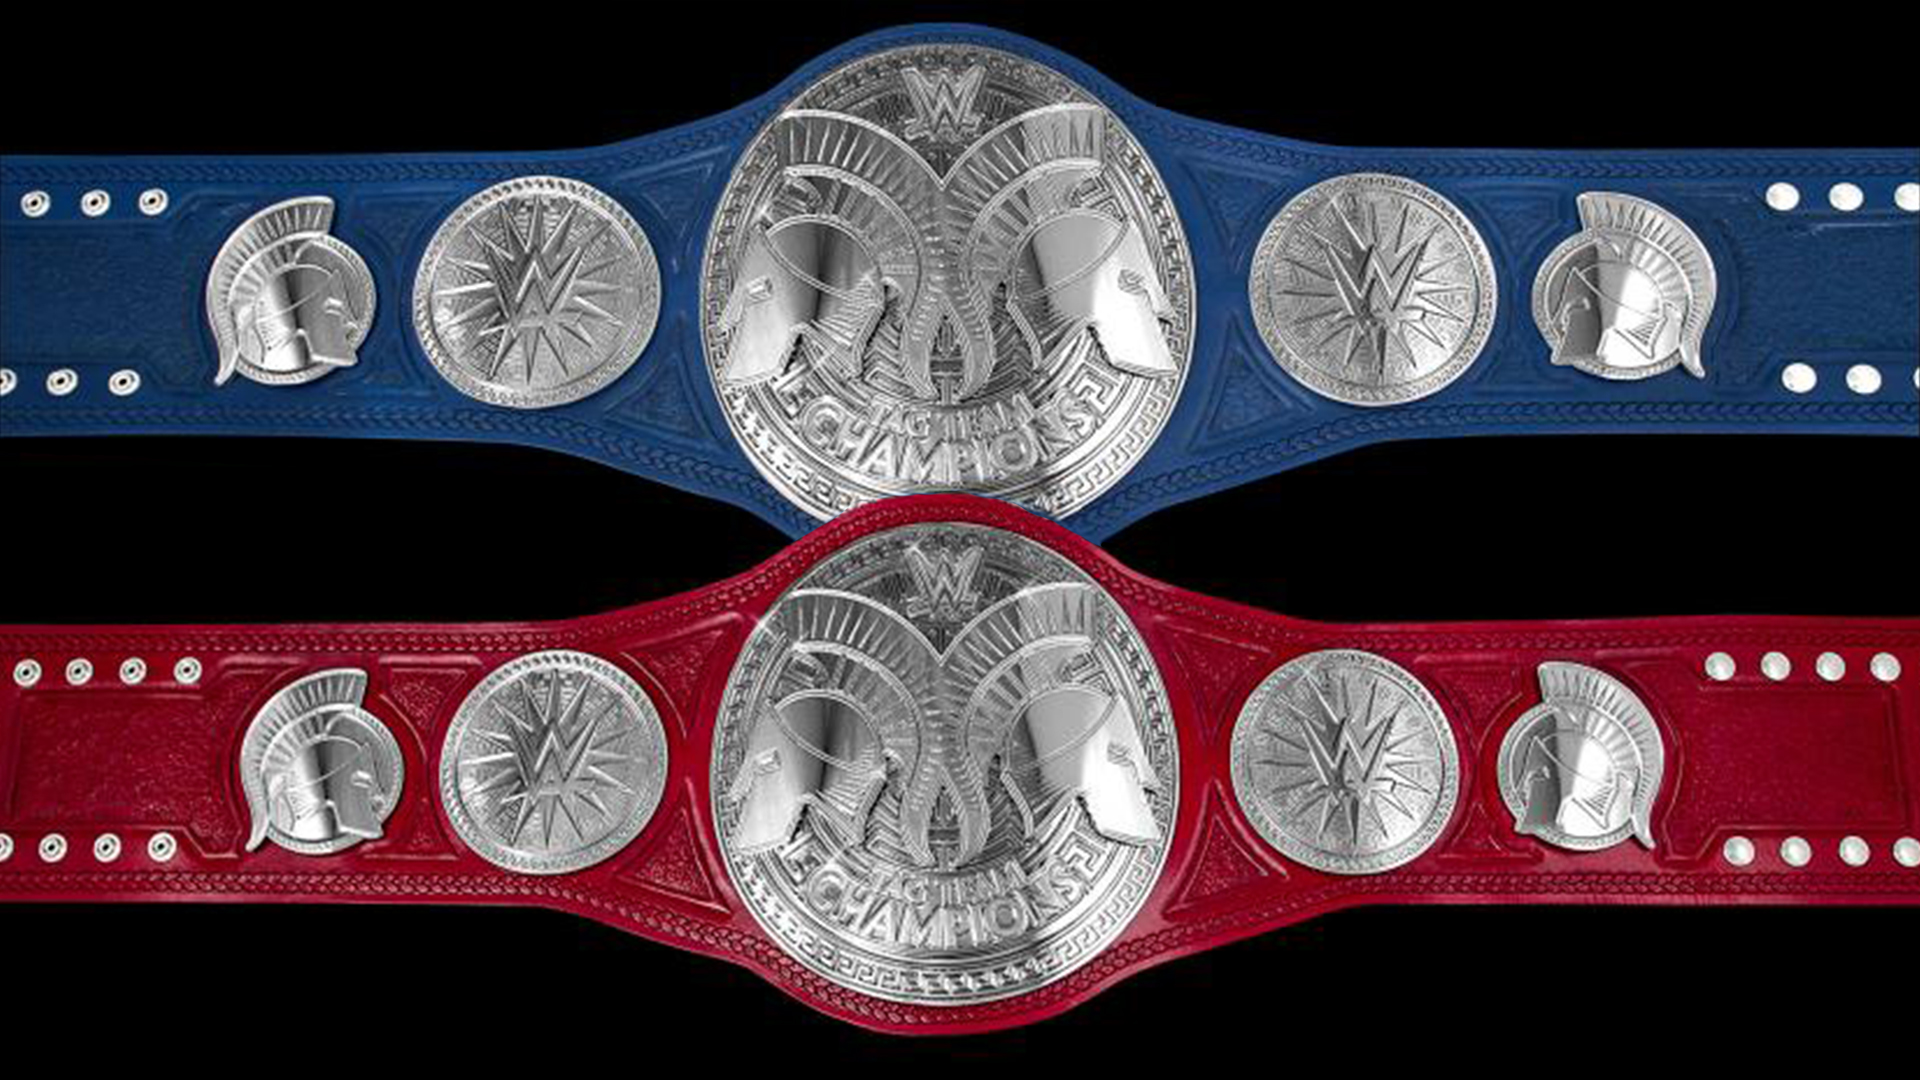 Should WWE Debut New Team Championship Belt Designs?